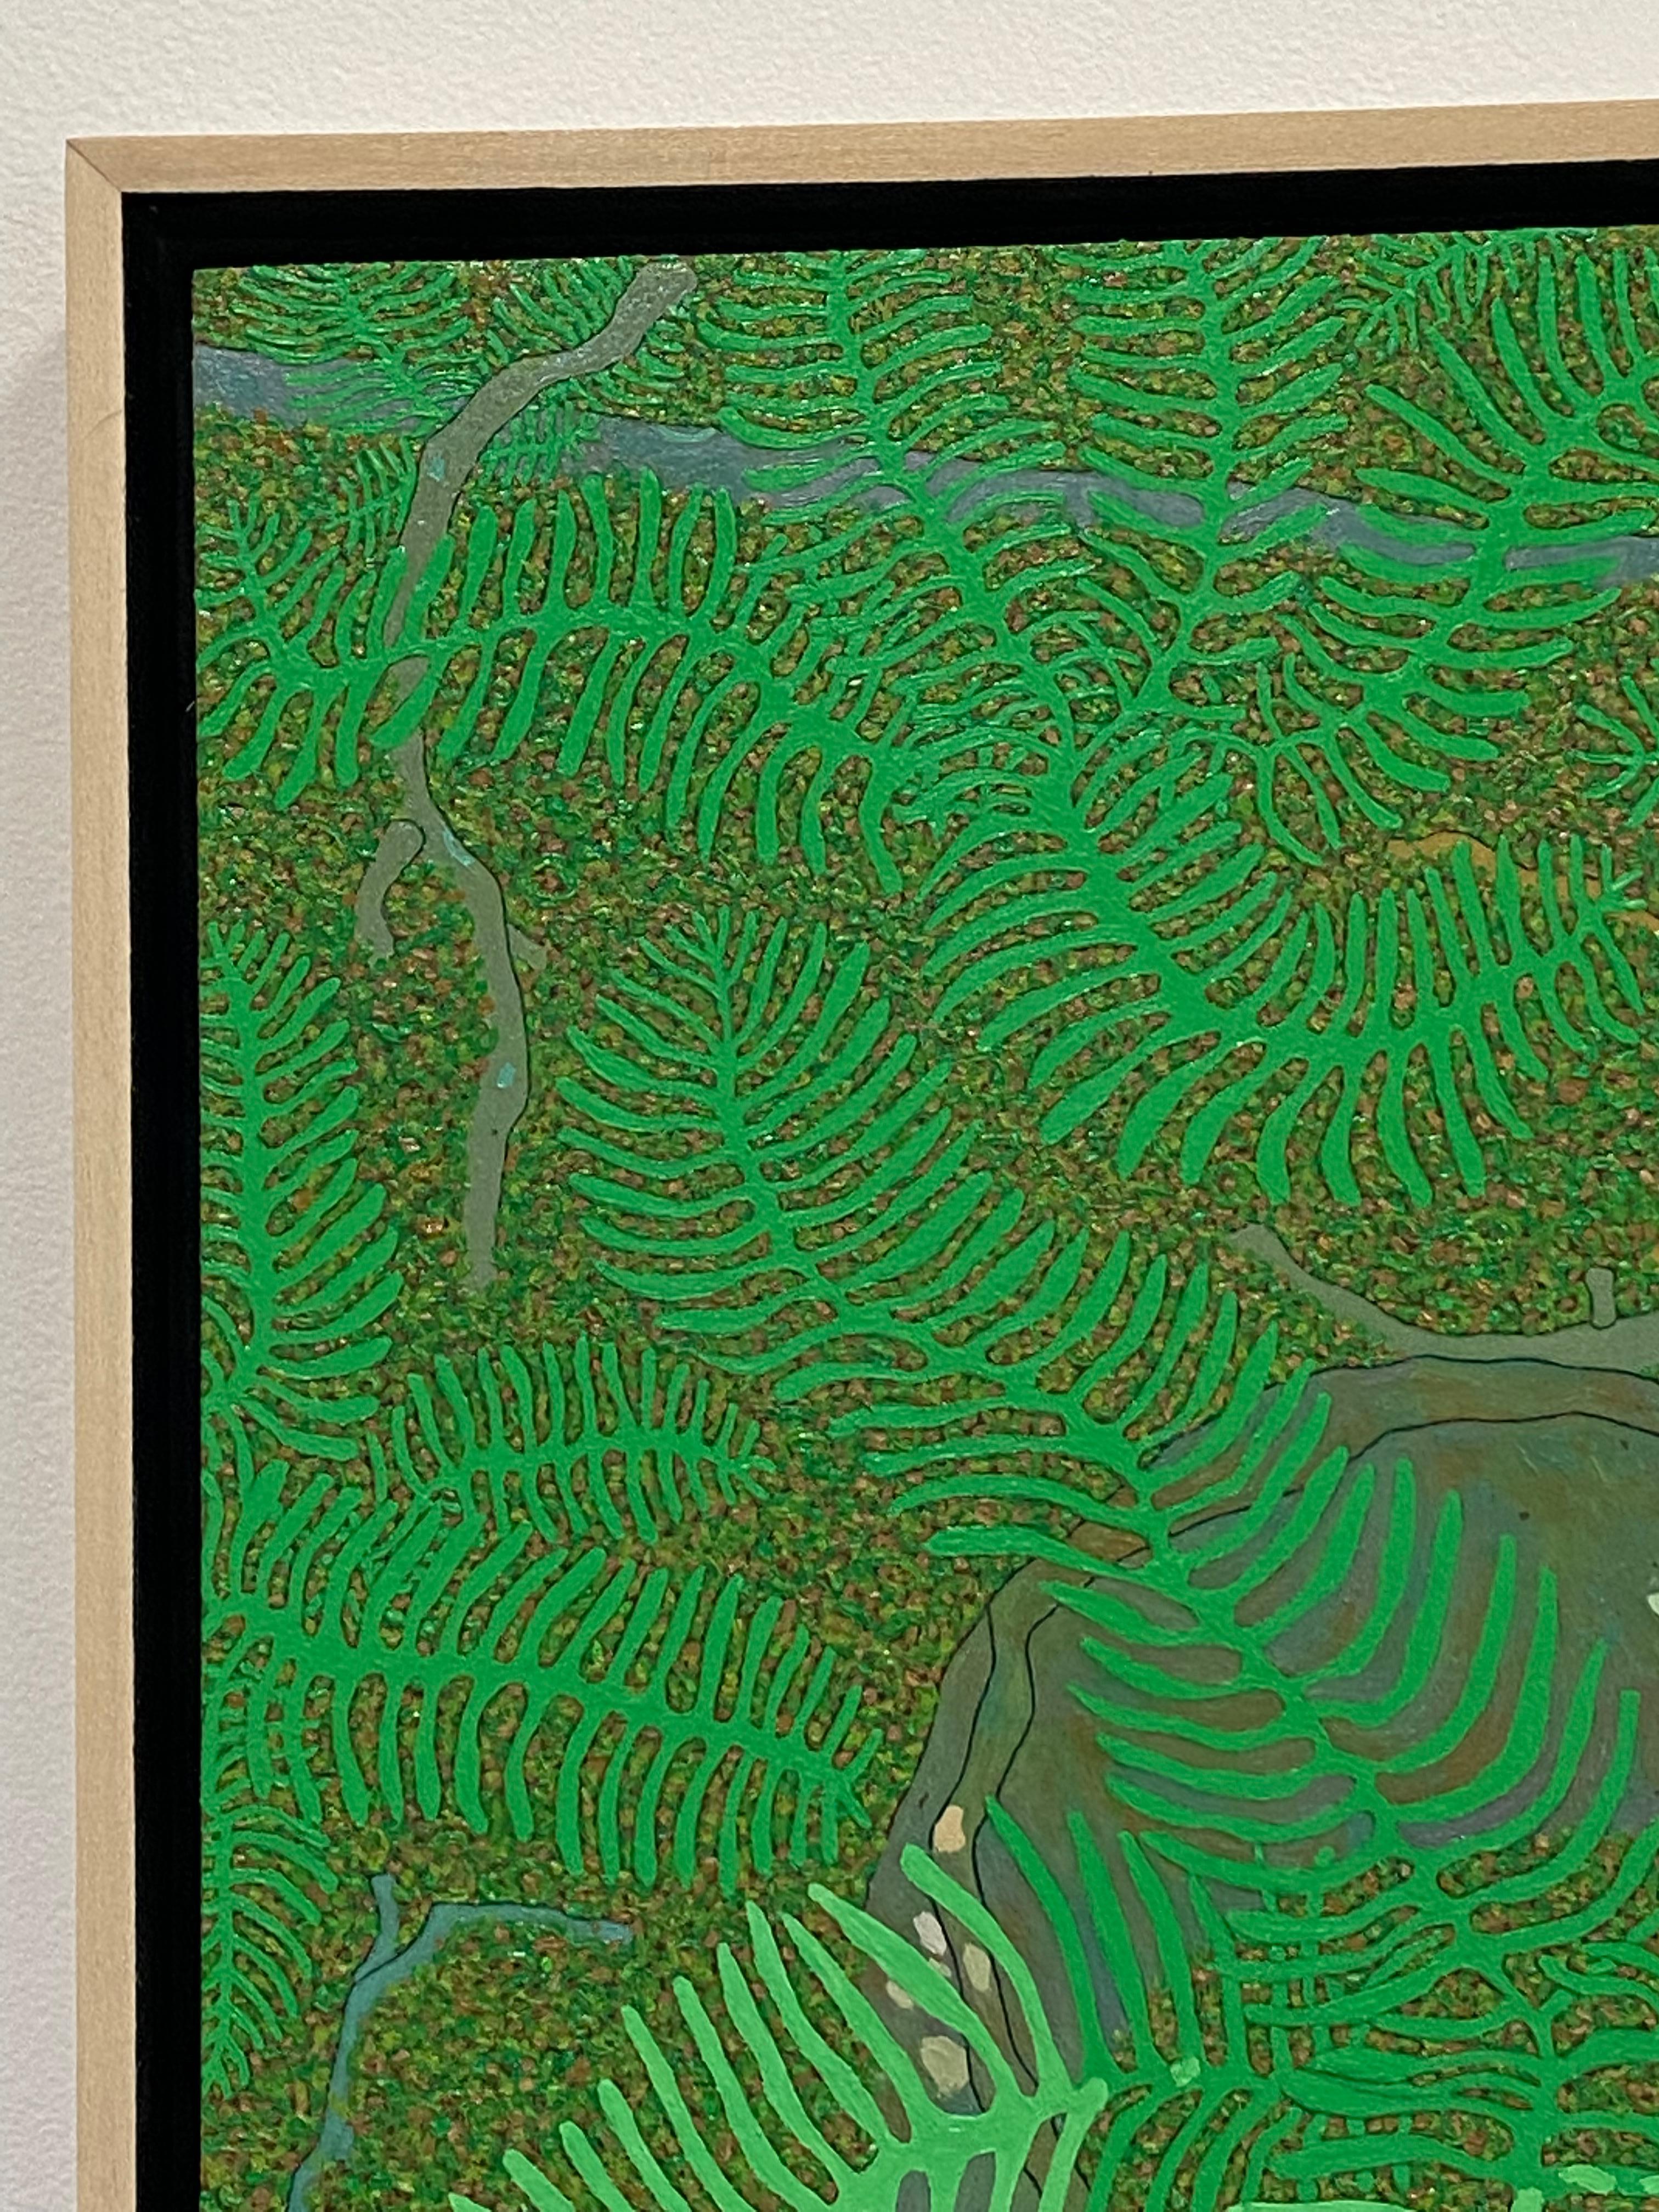 Der dichte, üppige Wald von Hennens Heimat Wyatt Mountain, Virginia, ist das Motiv für dieses detailreiche Landschaftsgemälde. Ein Bett aus grünen Farnen auf dem moosbedeckten Waldboden suggeriert die Ruhe und Gelassenheit der Natur im